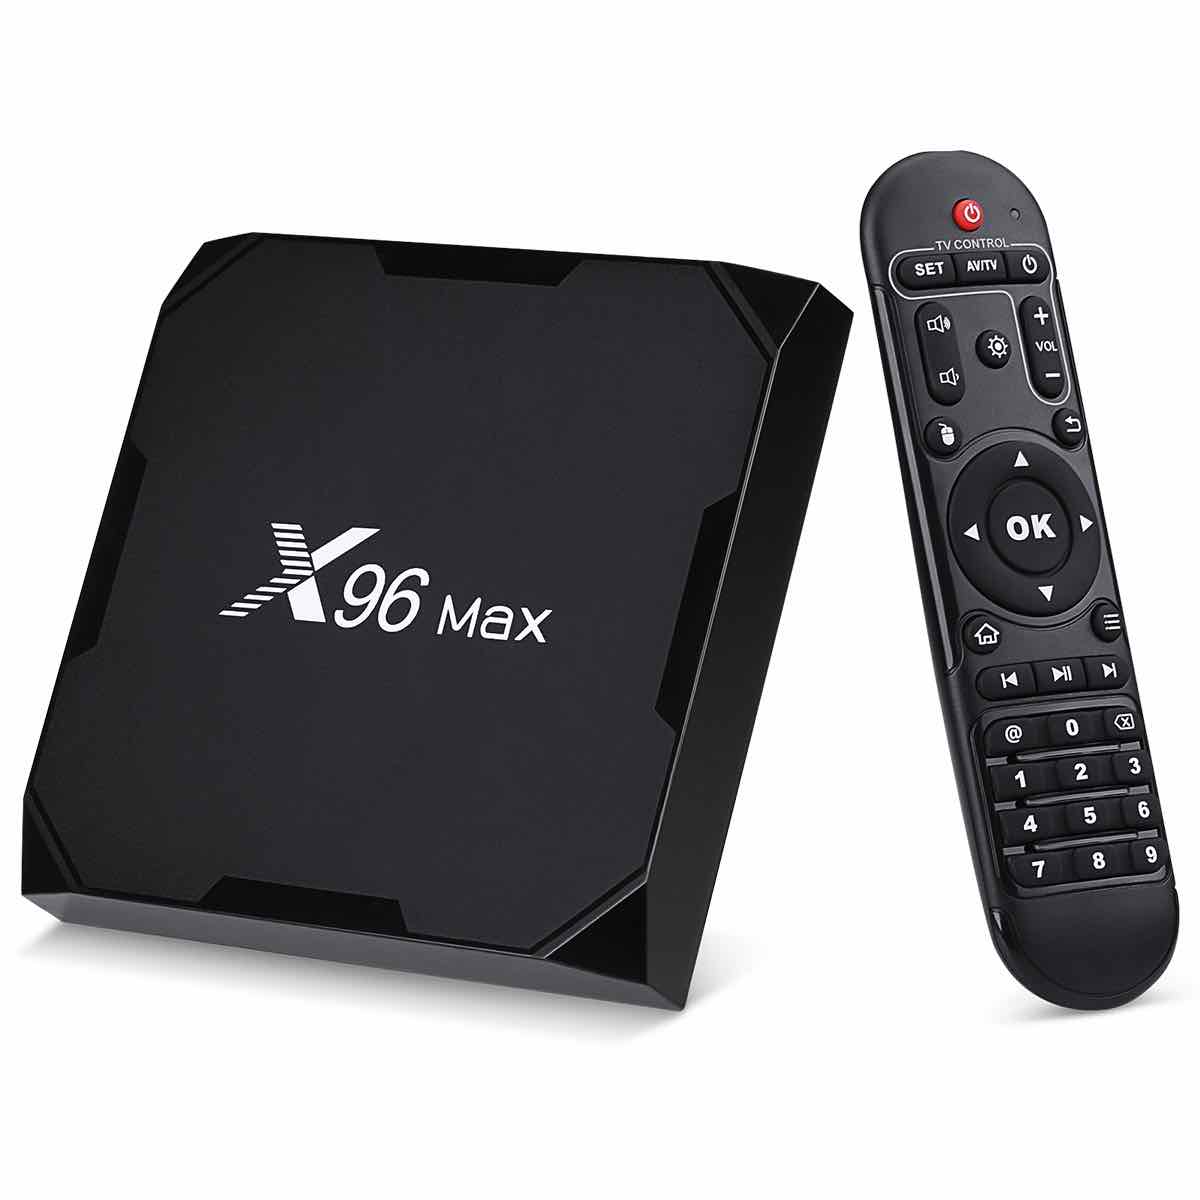 Что делает смарт приставка для телевизора. Smart TV Box x96 Max. Смарт приставка x96 Max Plus. Смарт приставка x96max+4/32gb. Android приставка x96 Max.